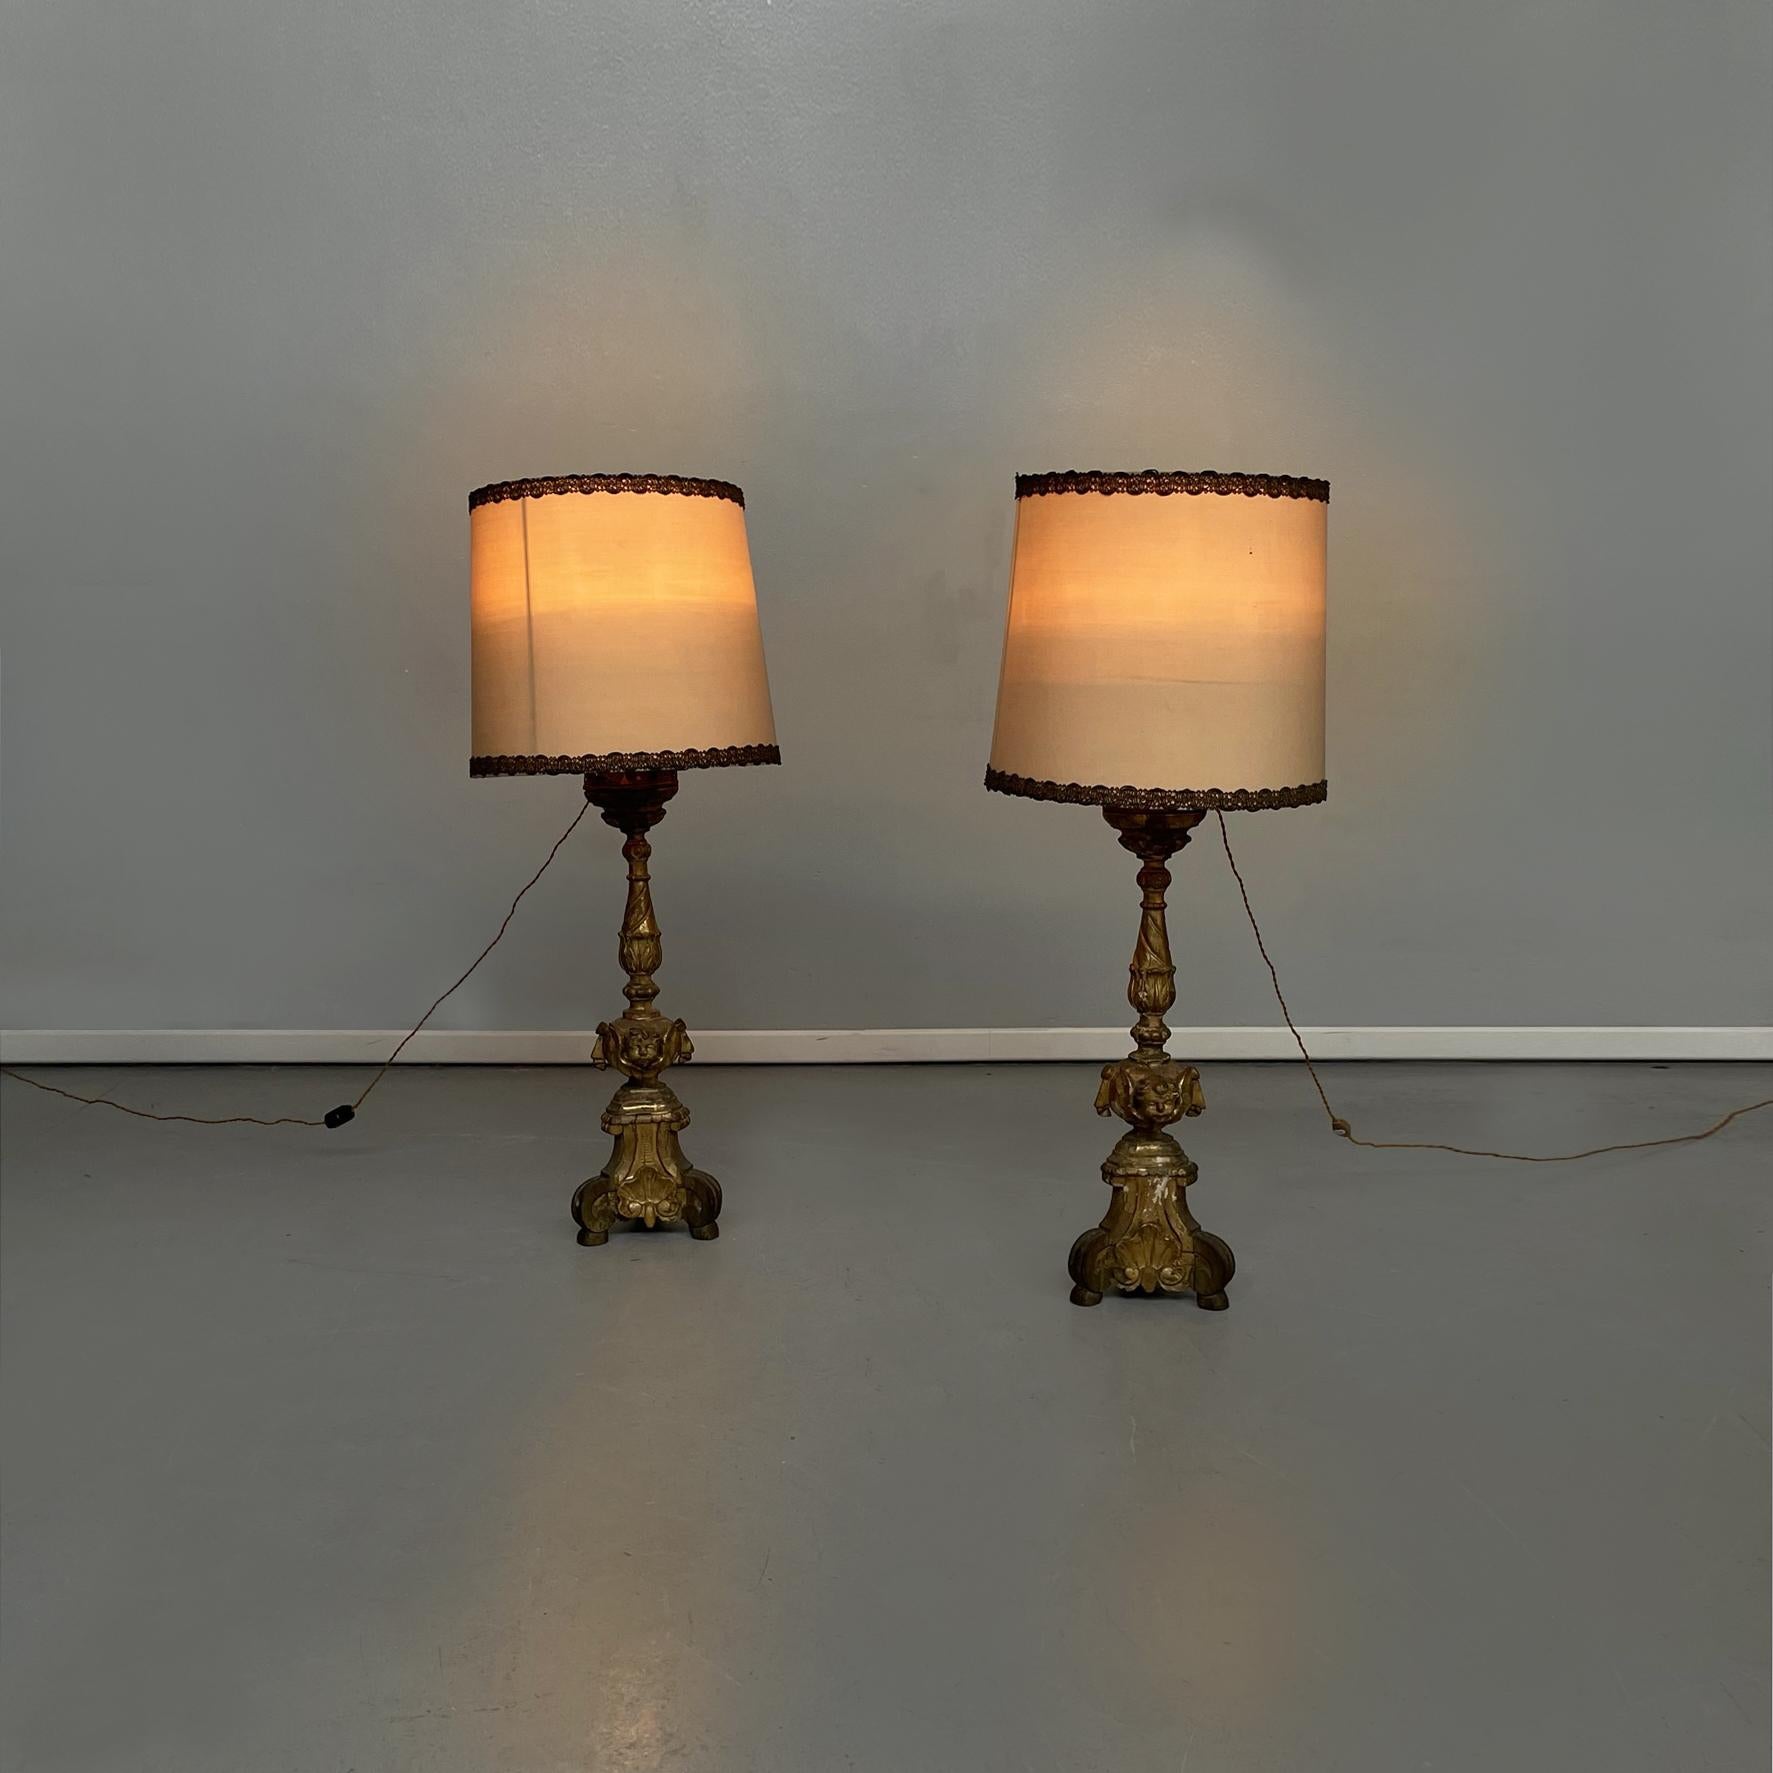 Lampes candélabres italiennes anciennes en bois peint en or et tissu beige, années 1800
Paire de lampes candélabres en bois peint en or. L'abat-jour est en tissu beige avec des garnitures en fil d'argent. La structure en bois est finement